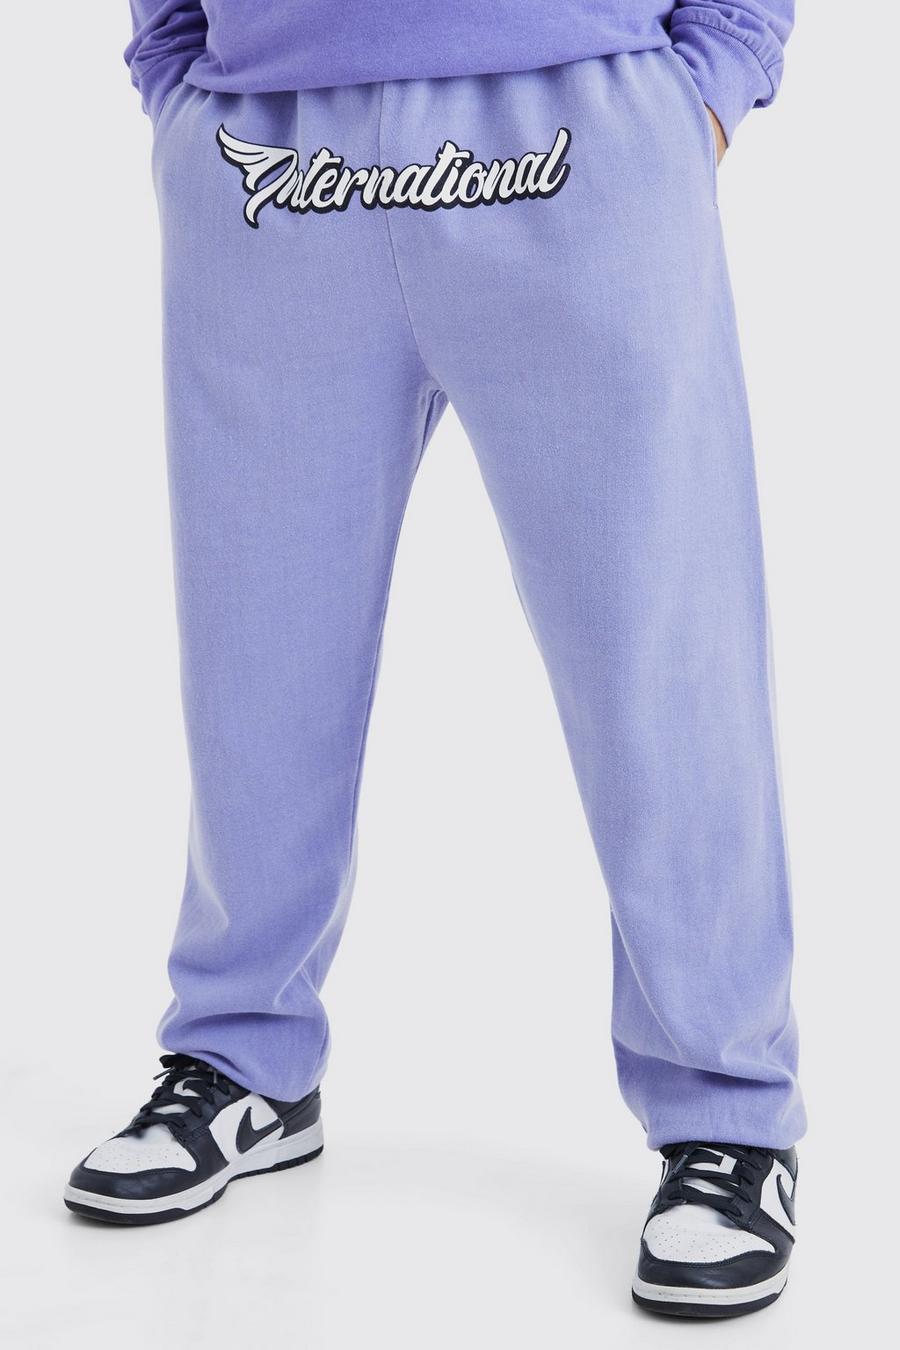 Pantalón deportivo oversize con estampado gráfico Worldwide en la entrepierna, Purple image number 1